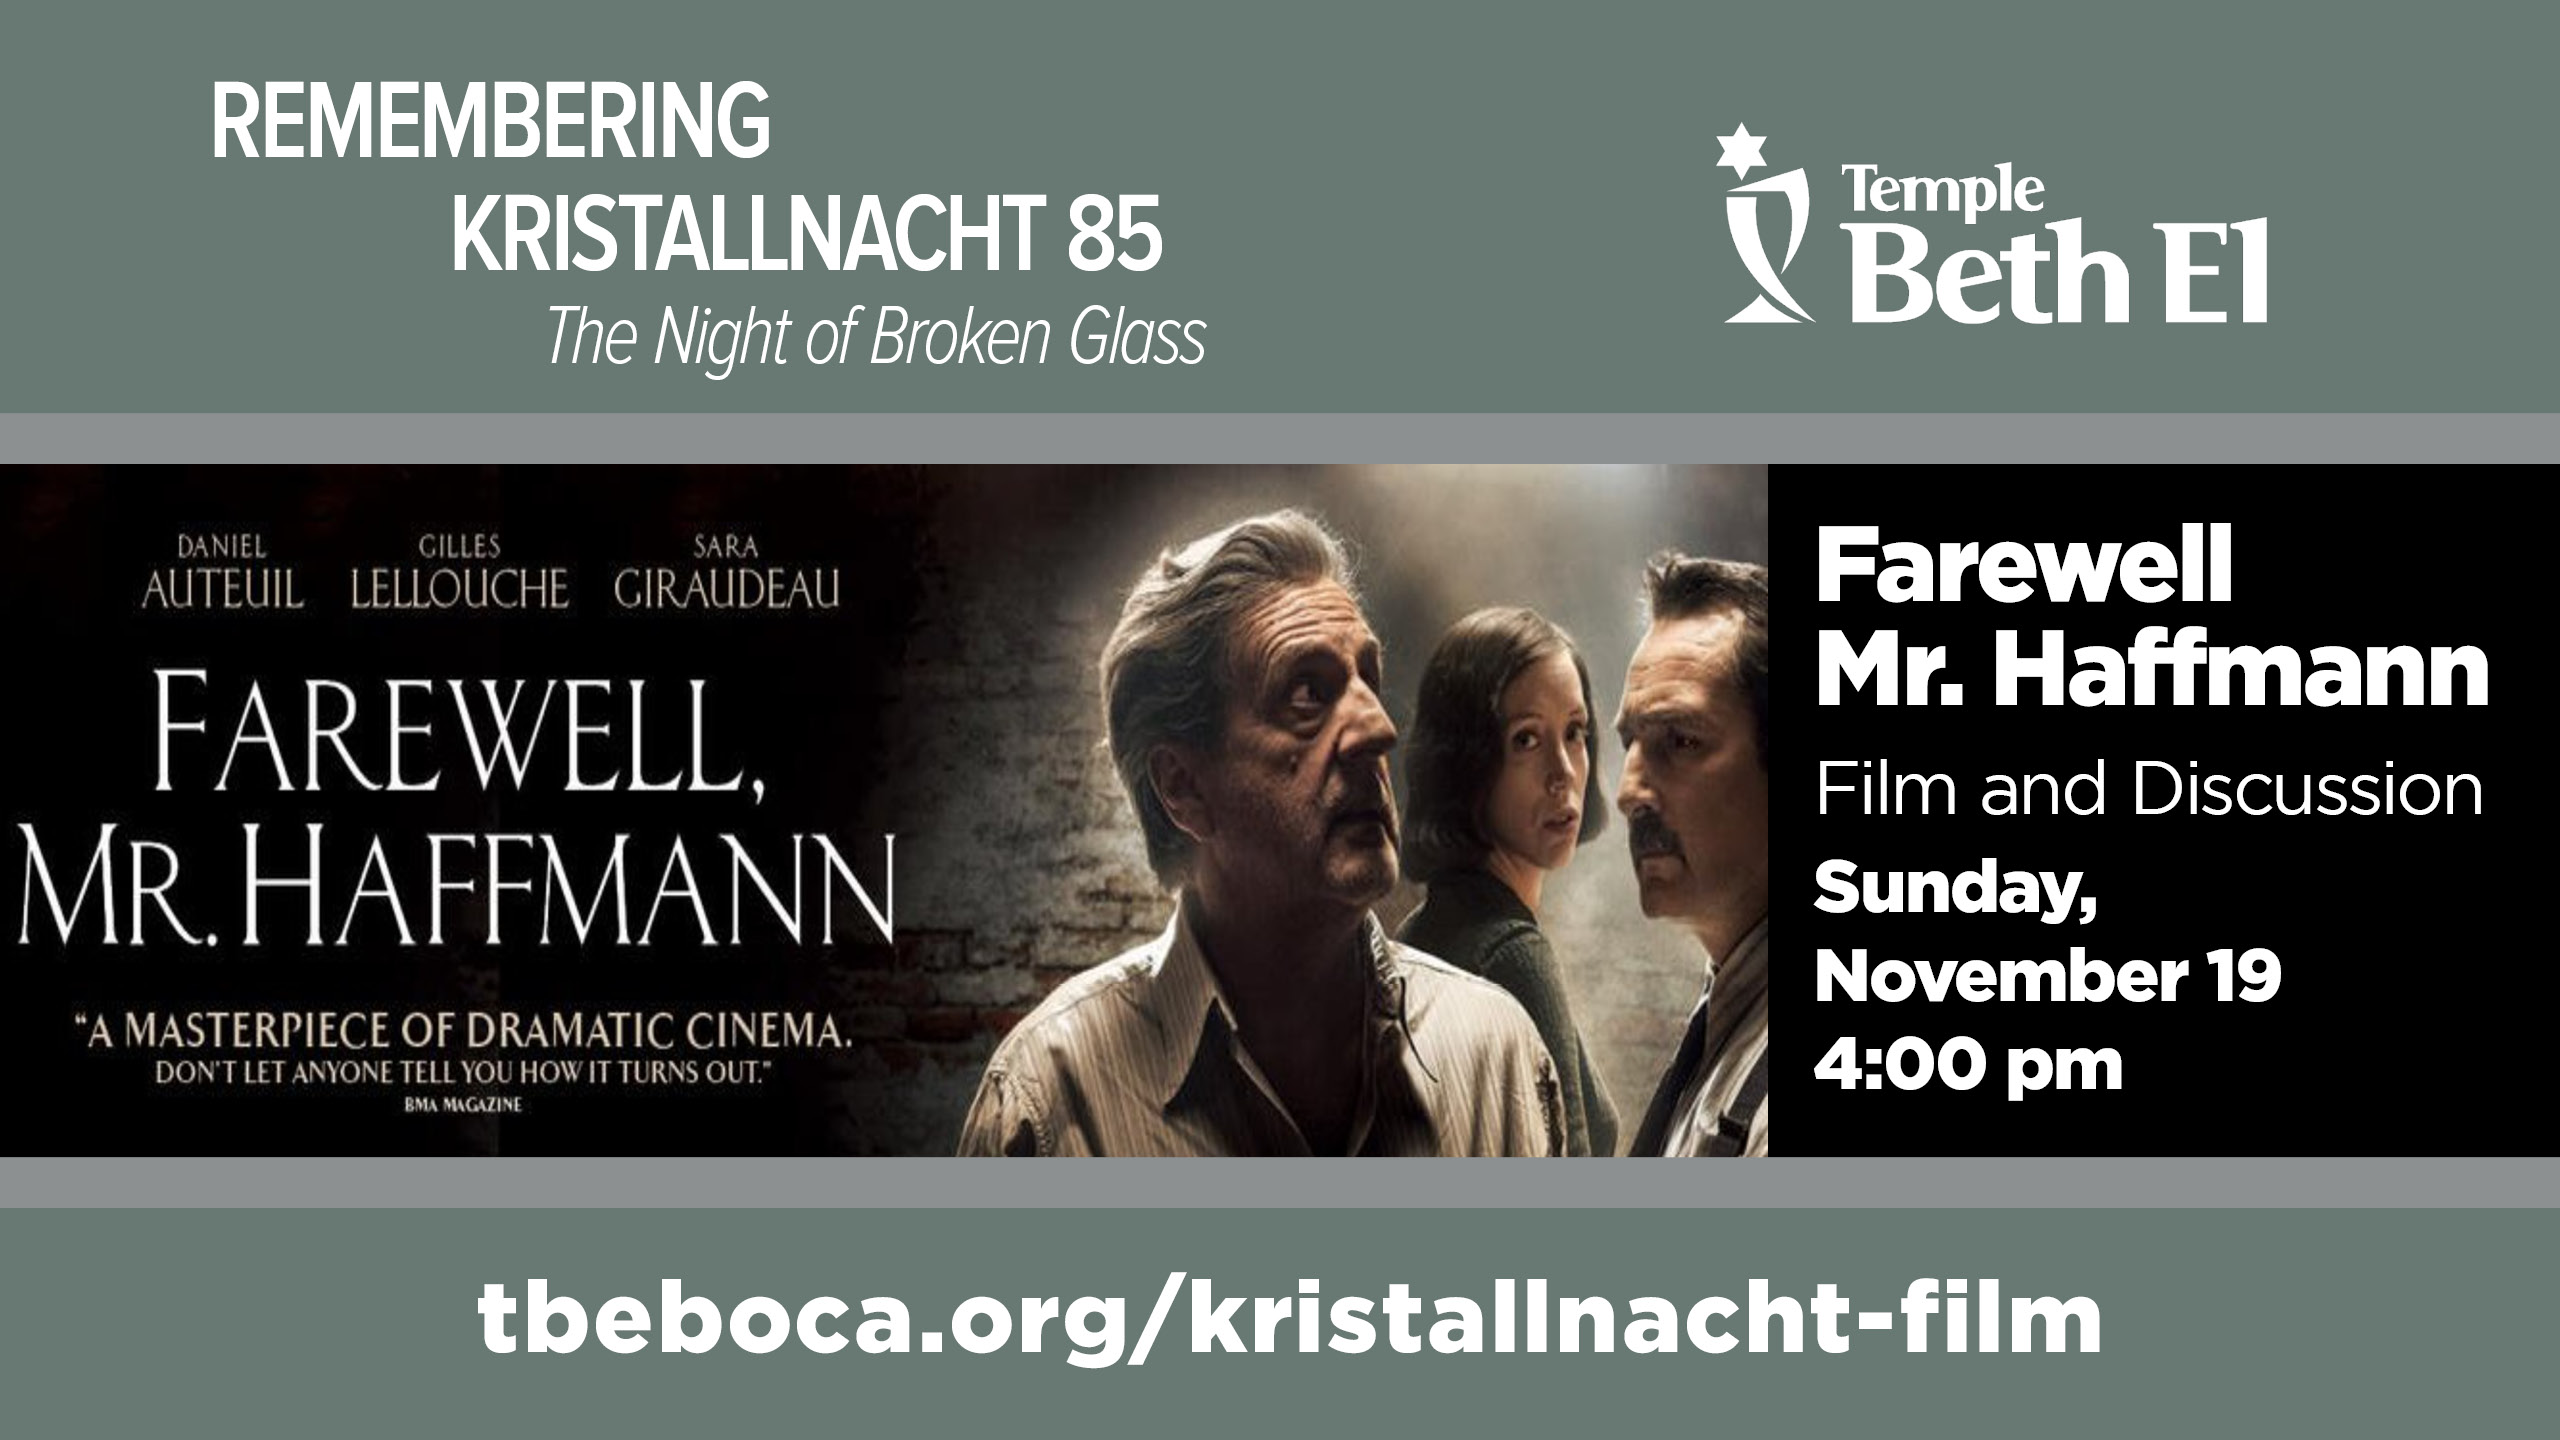 Farewell Mr Haffmann - Official Trailer 